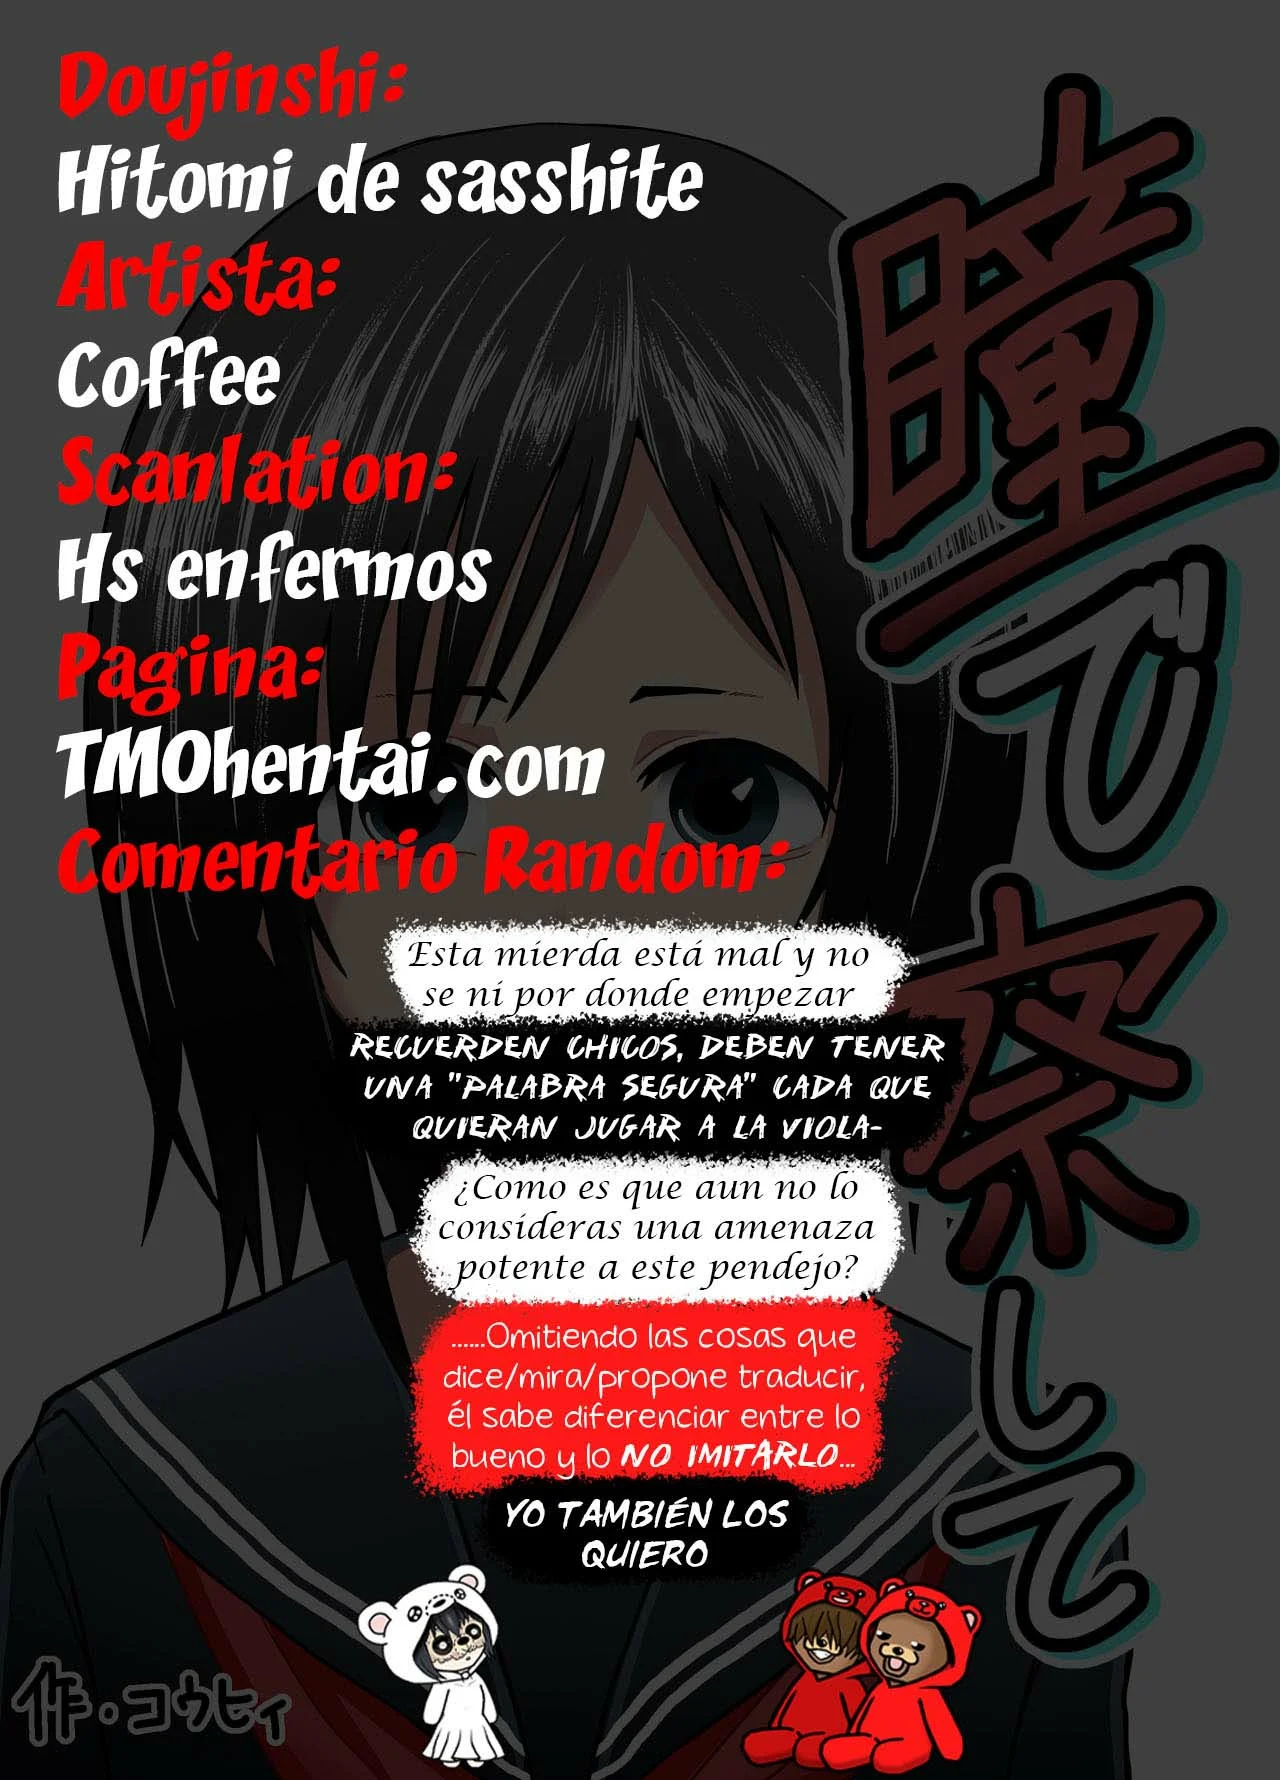 [Coffee] Hitomi de sasshite